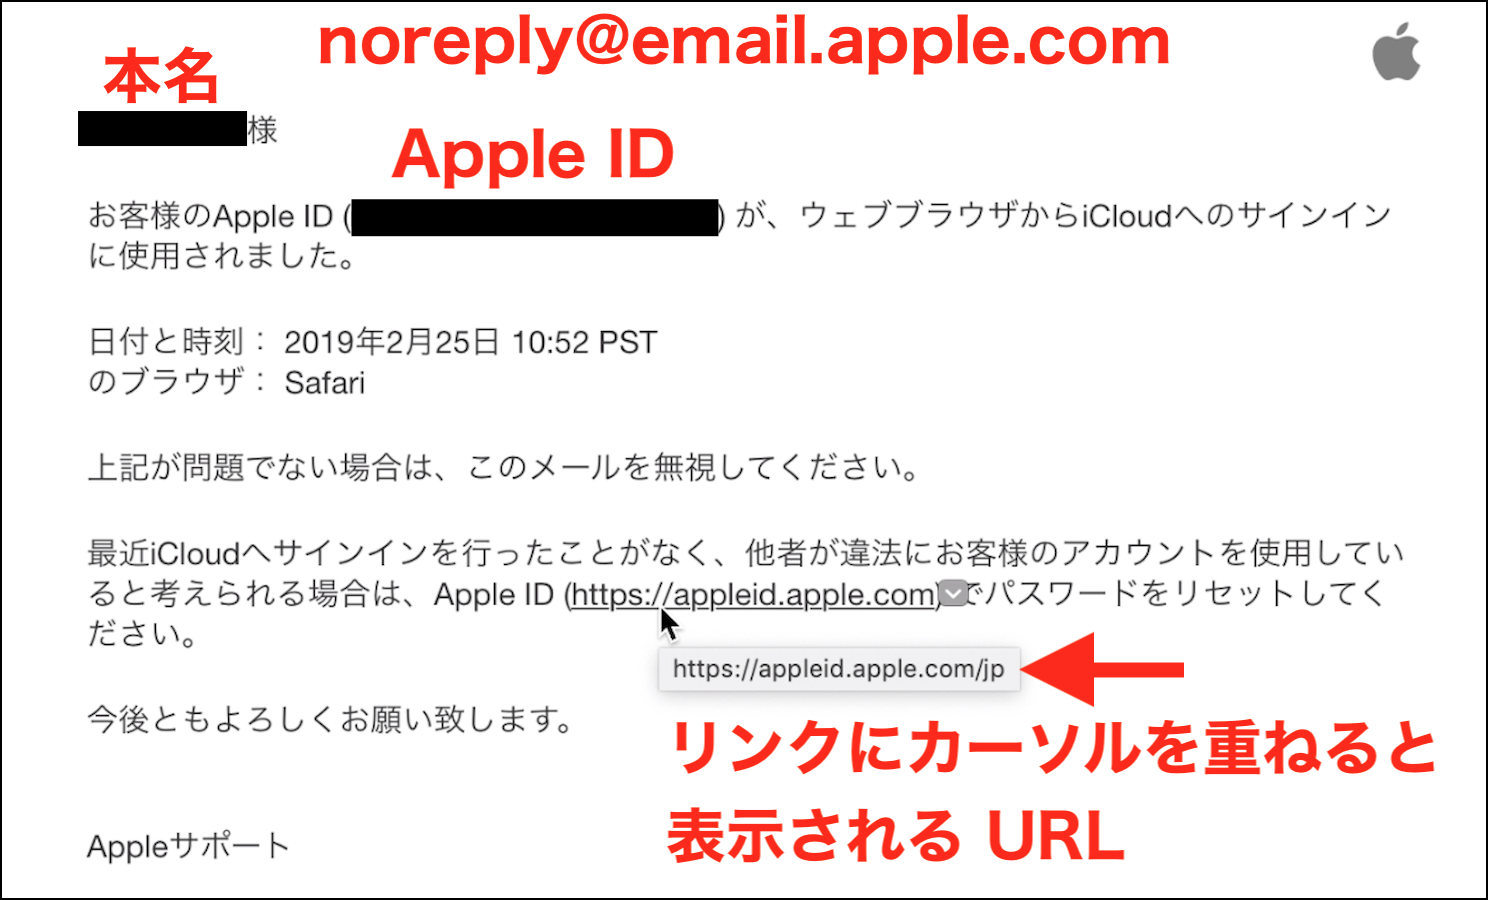 フィッシング詐欺ようなメールが来て、ア… - Apple コミュニティ